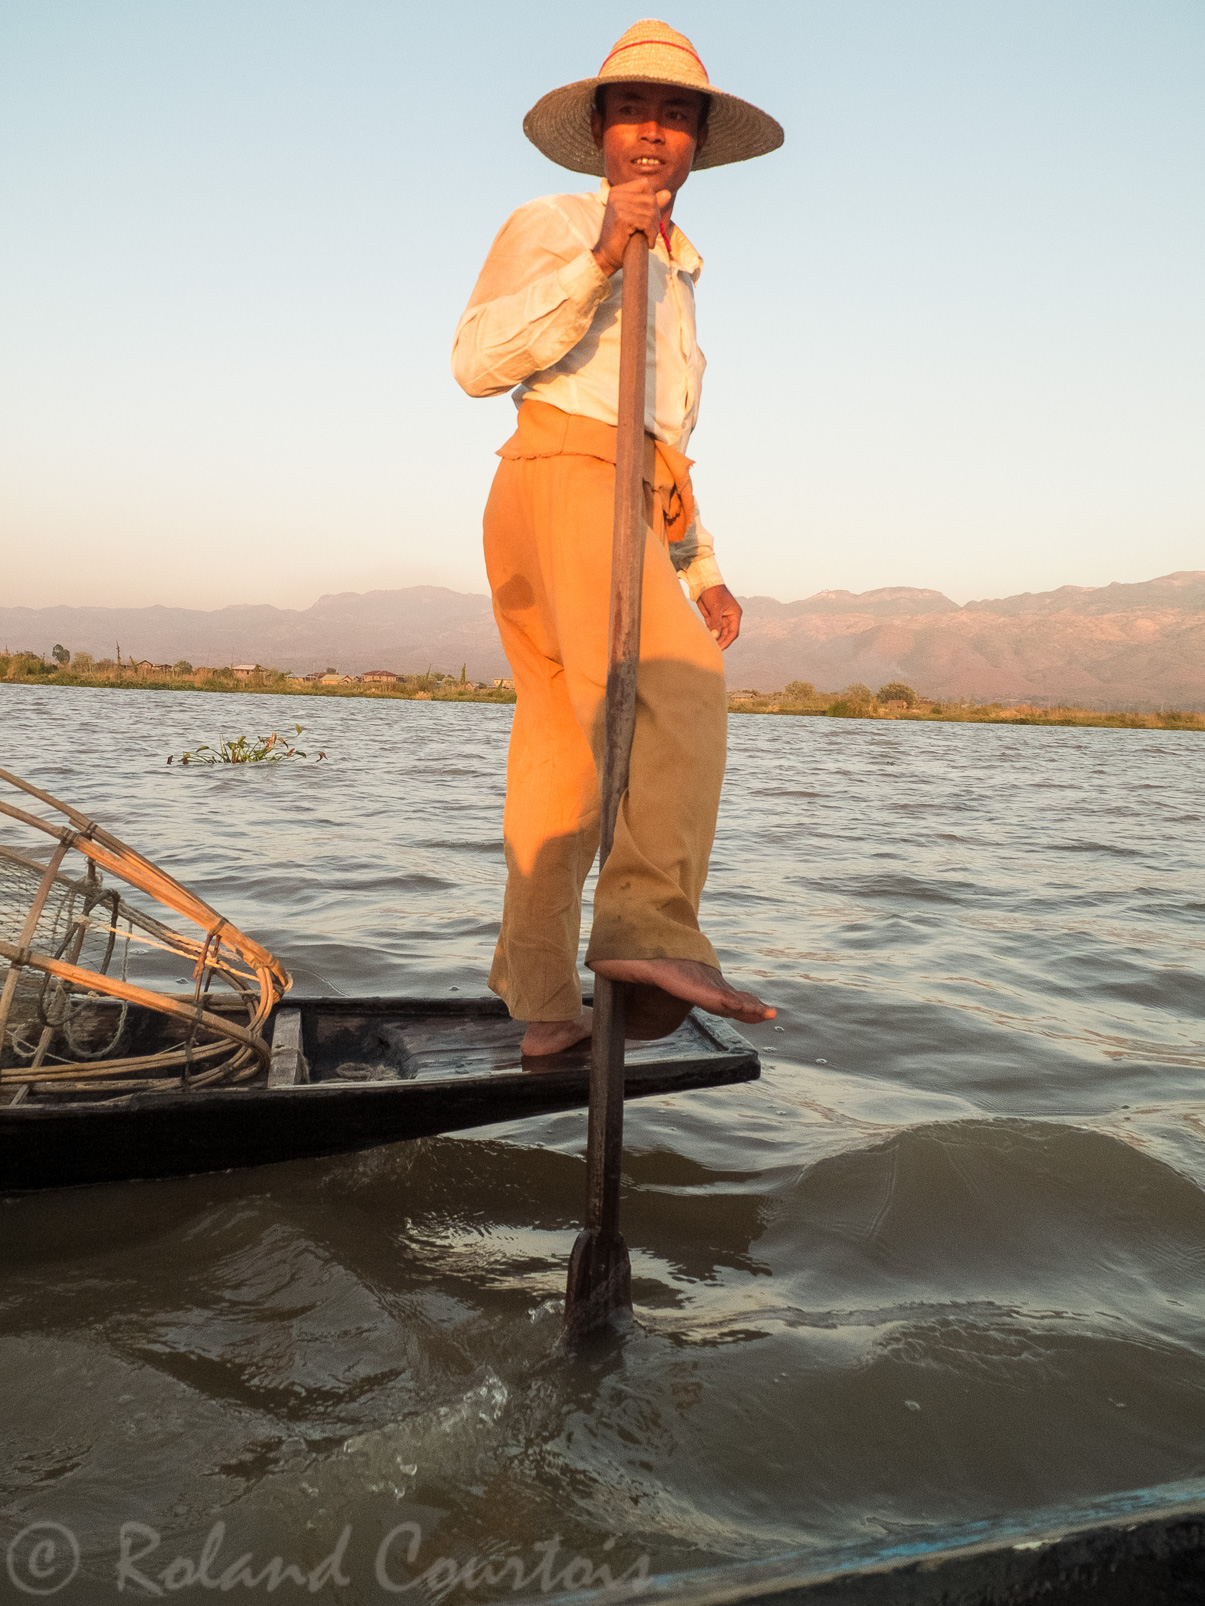 Sur le lac Inle, les pêcheurs Inthas ont une manière particulière de ramer et de pêcher.